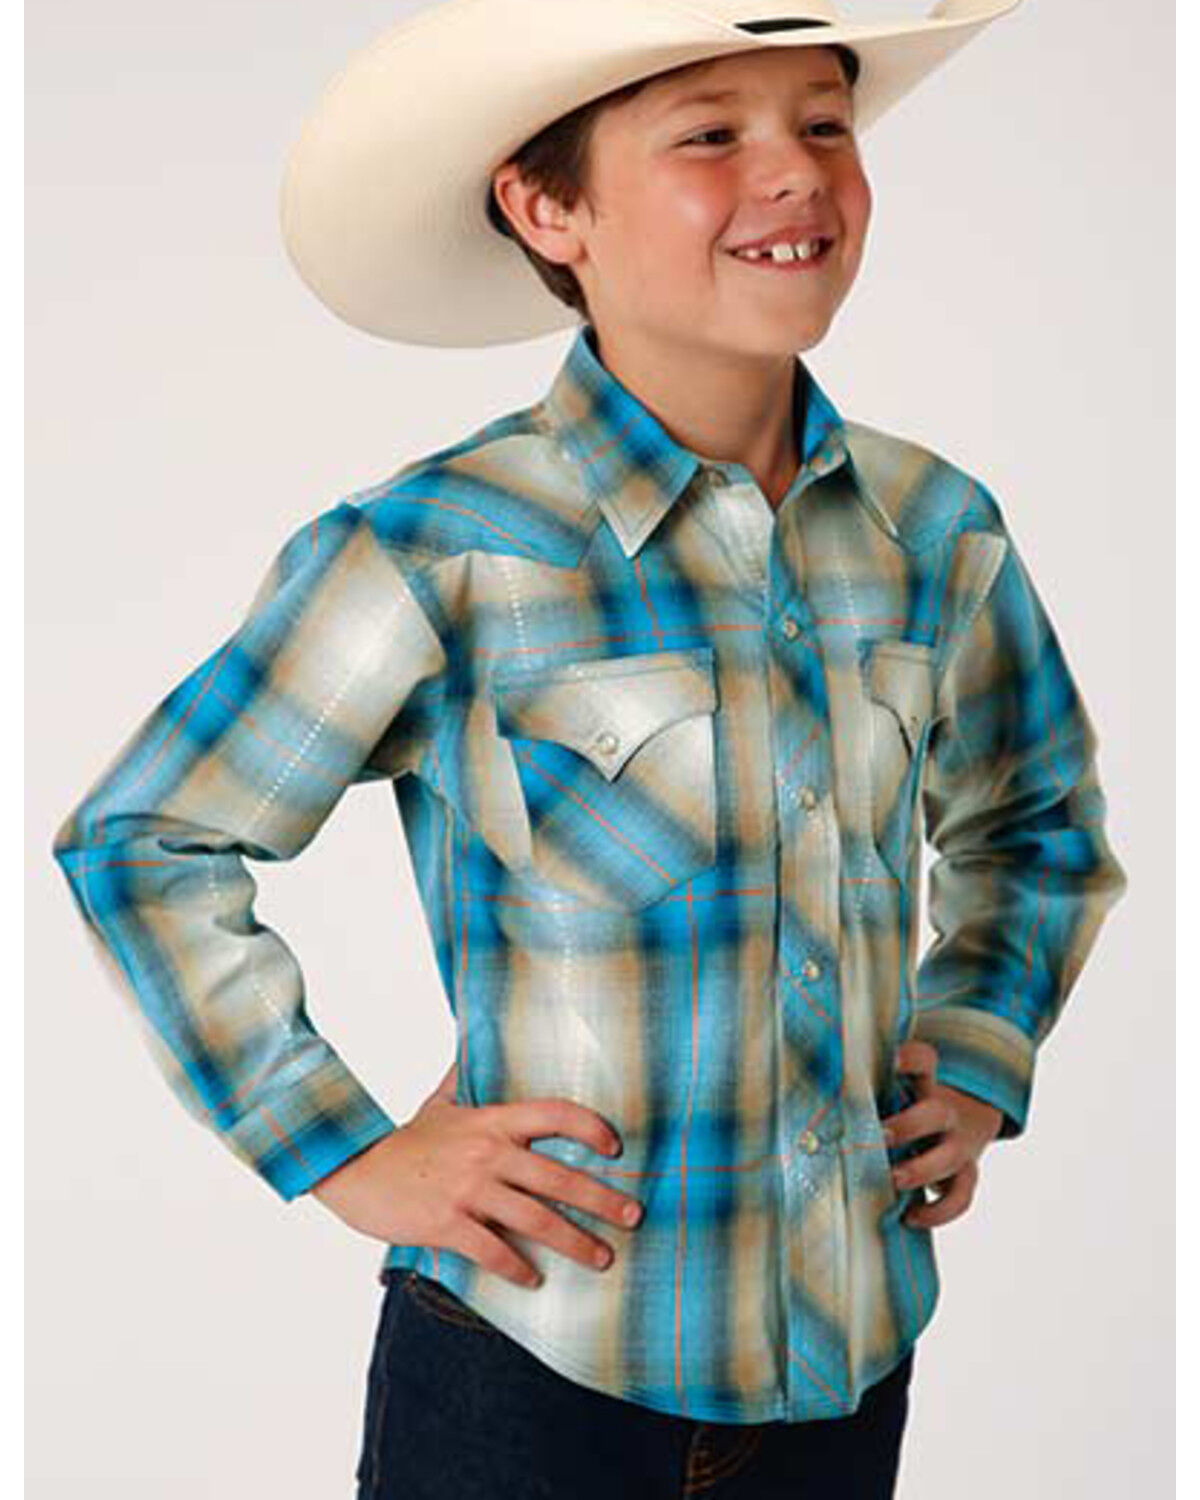 NWT BOYS Dance Costume Country Western Fringed Cowboy Shirt Plaid w/ Kercheif 